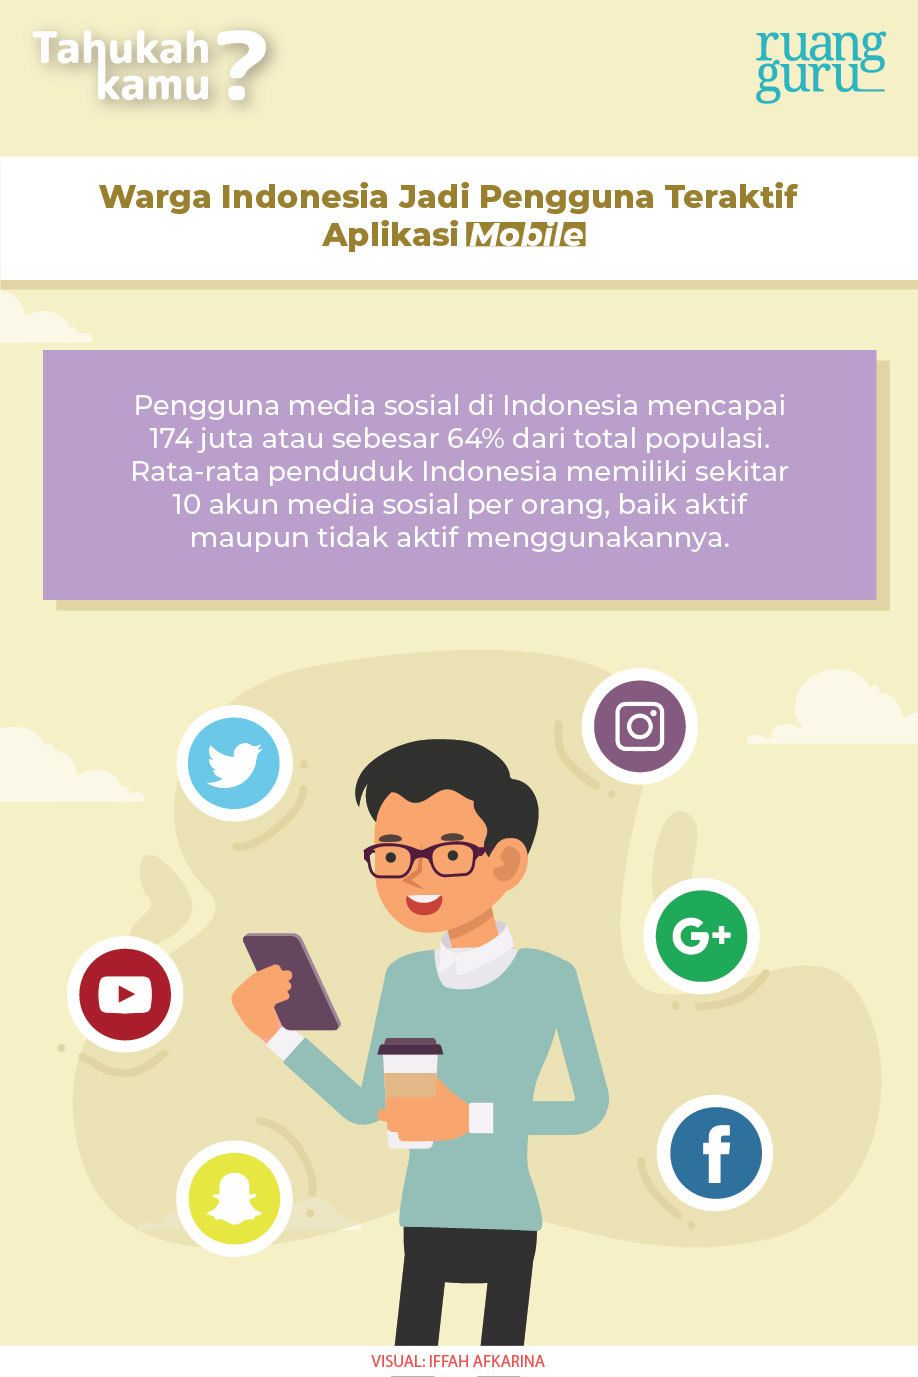 warga indonesia jadi pengguna aplikasi mobile teraktif